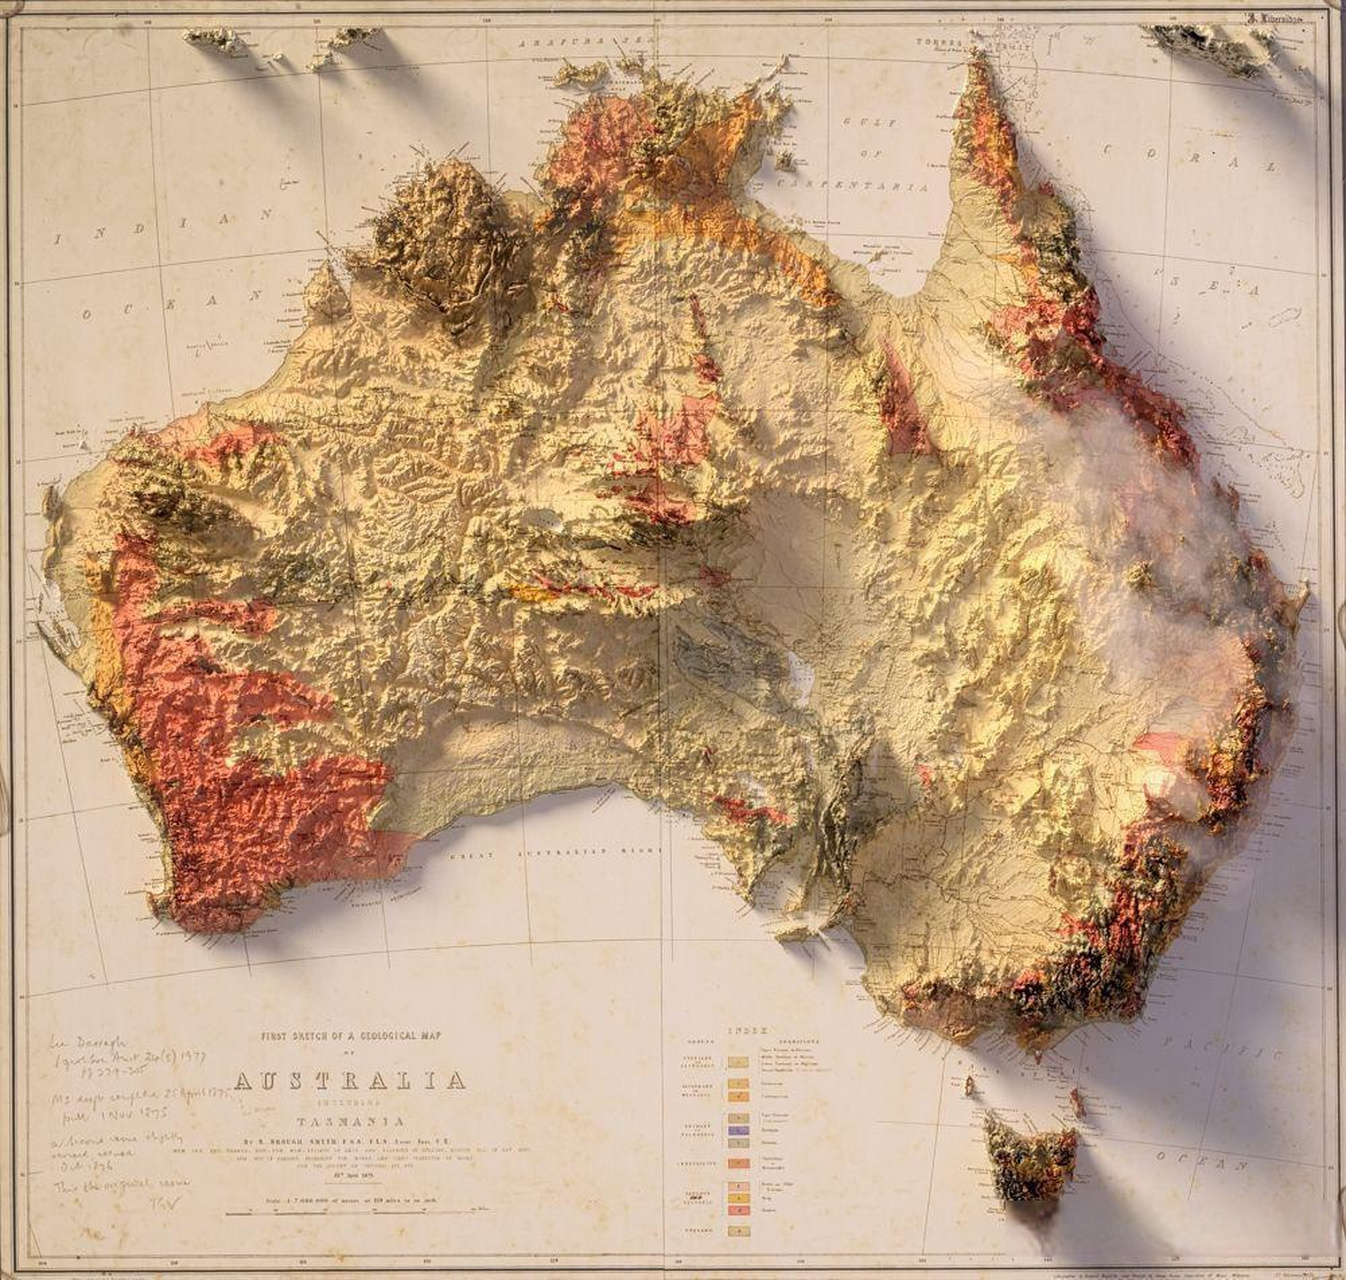 澳大利亚地形图 平原并不多,中部也很干旱,大部分人还是住在沿海地区